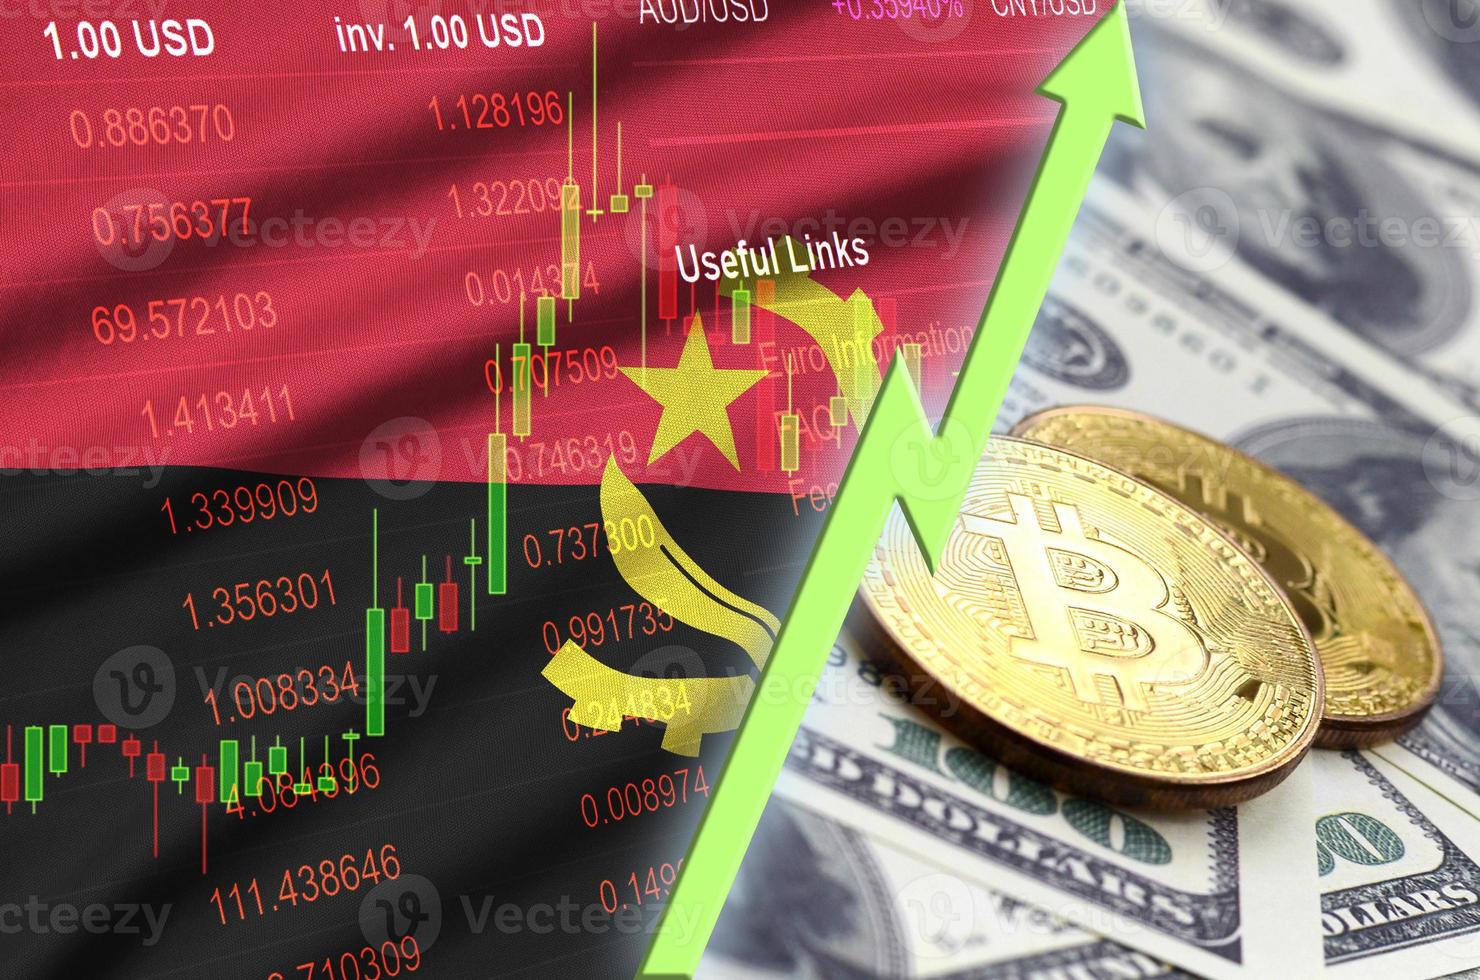 bandeira de angola e tendência crescente de criptomoeda com dois bitcoins em notas de dólar foto